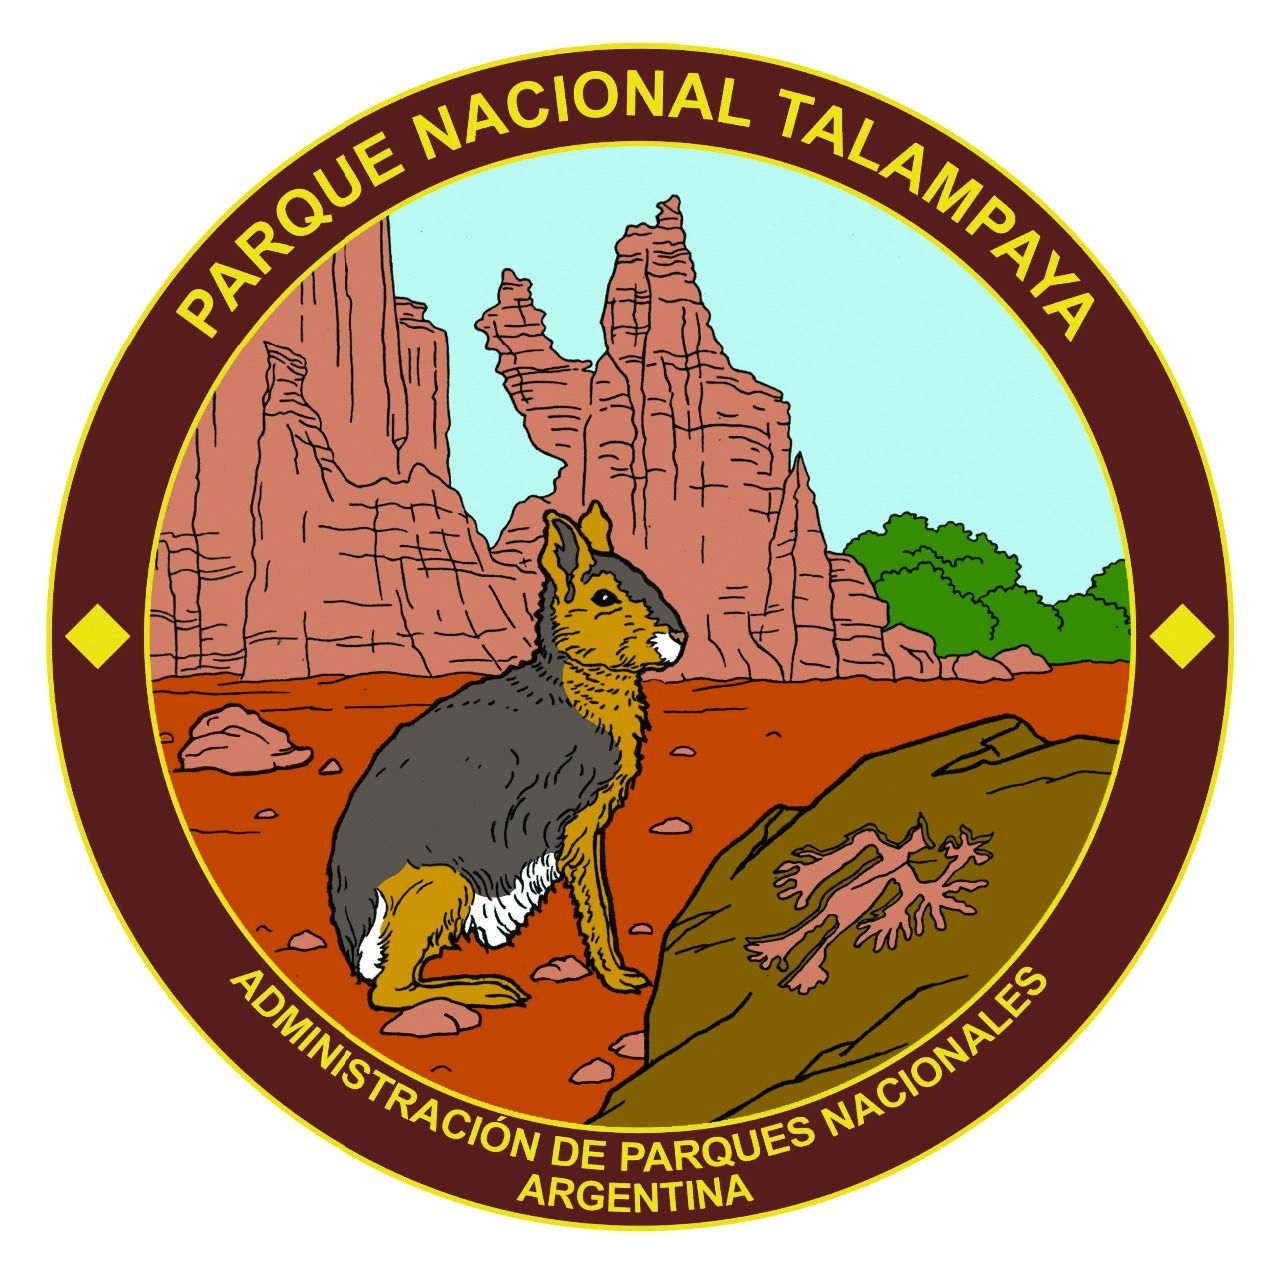 parque nacional talampaya